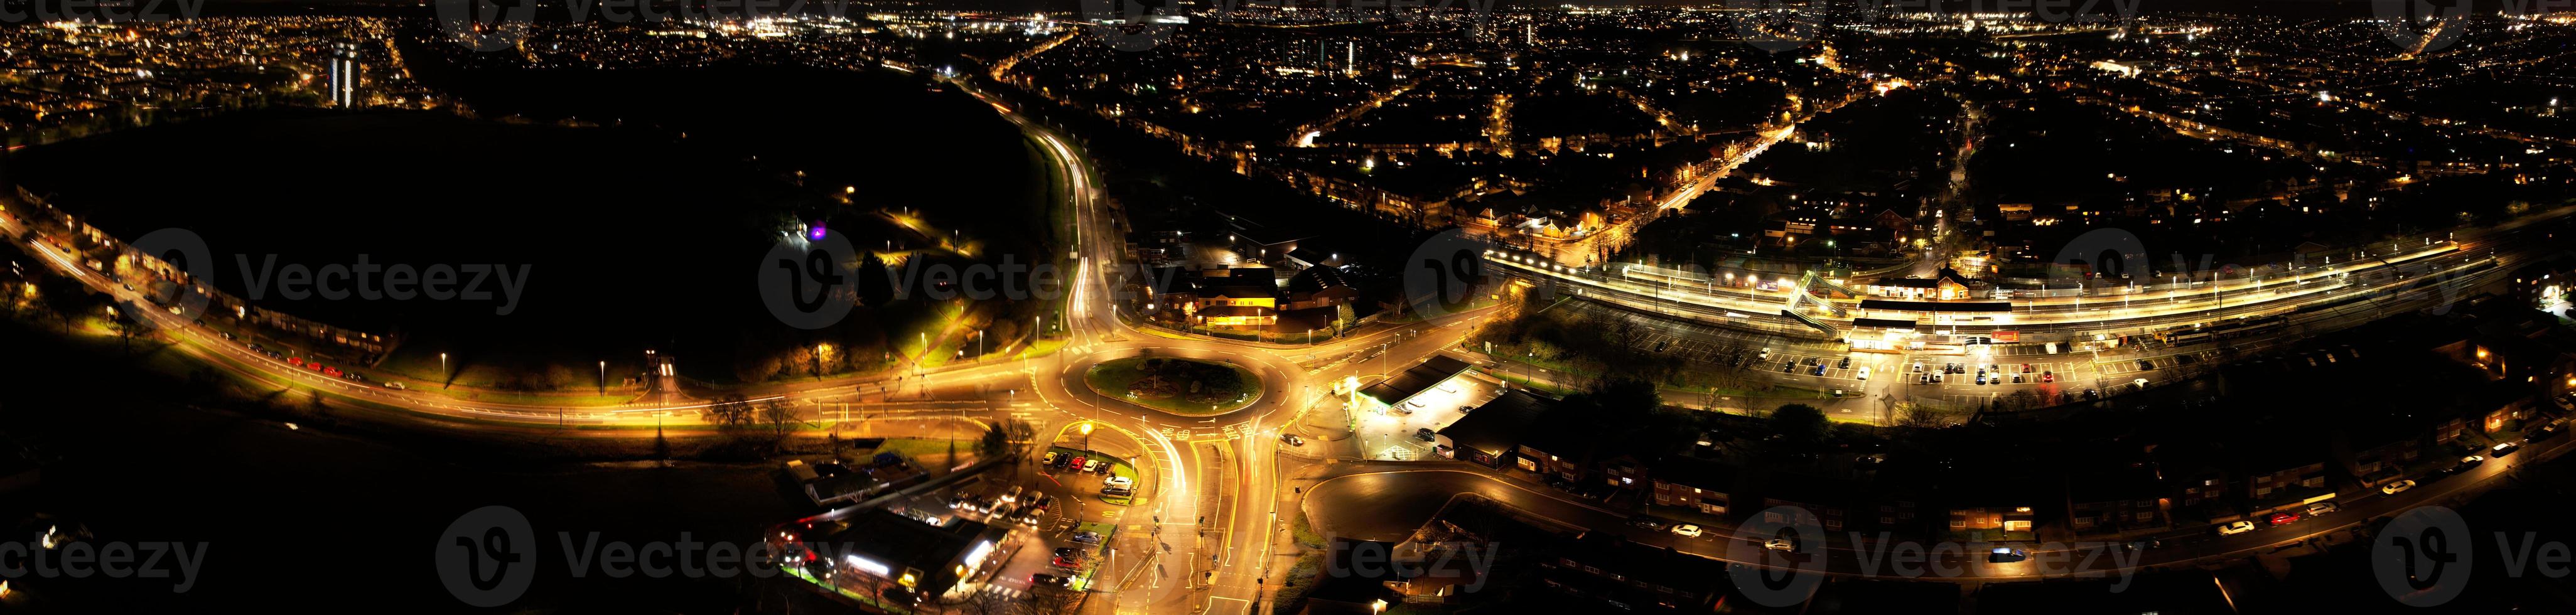 hermosa vista aérea nocturna de la ciudad británica, imágenes de drones de gran ángulo de la ciudad de luton en inglaterra reino unido foto